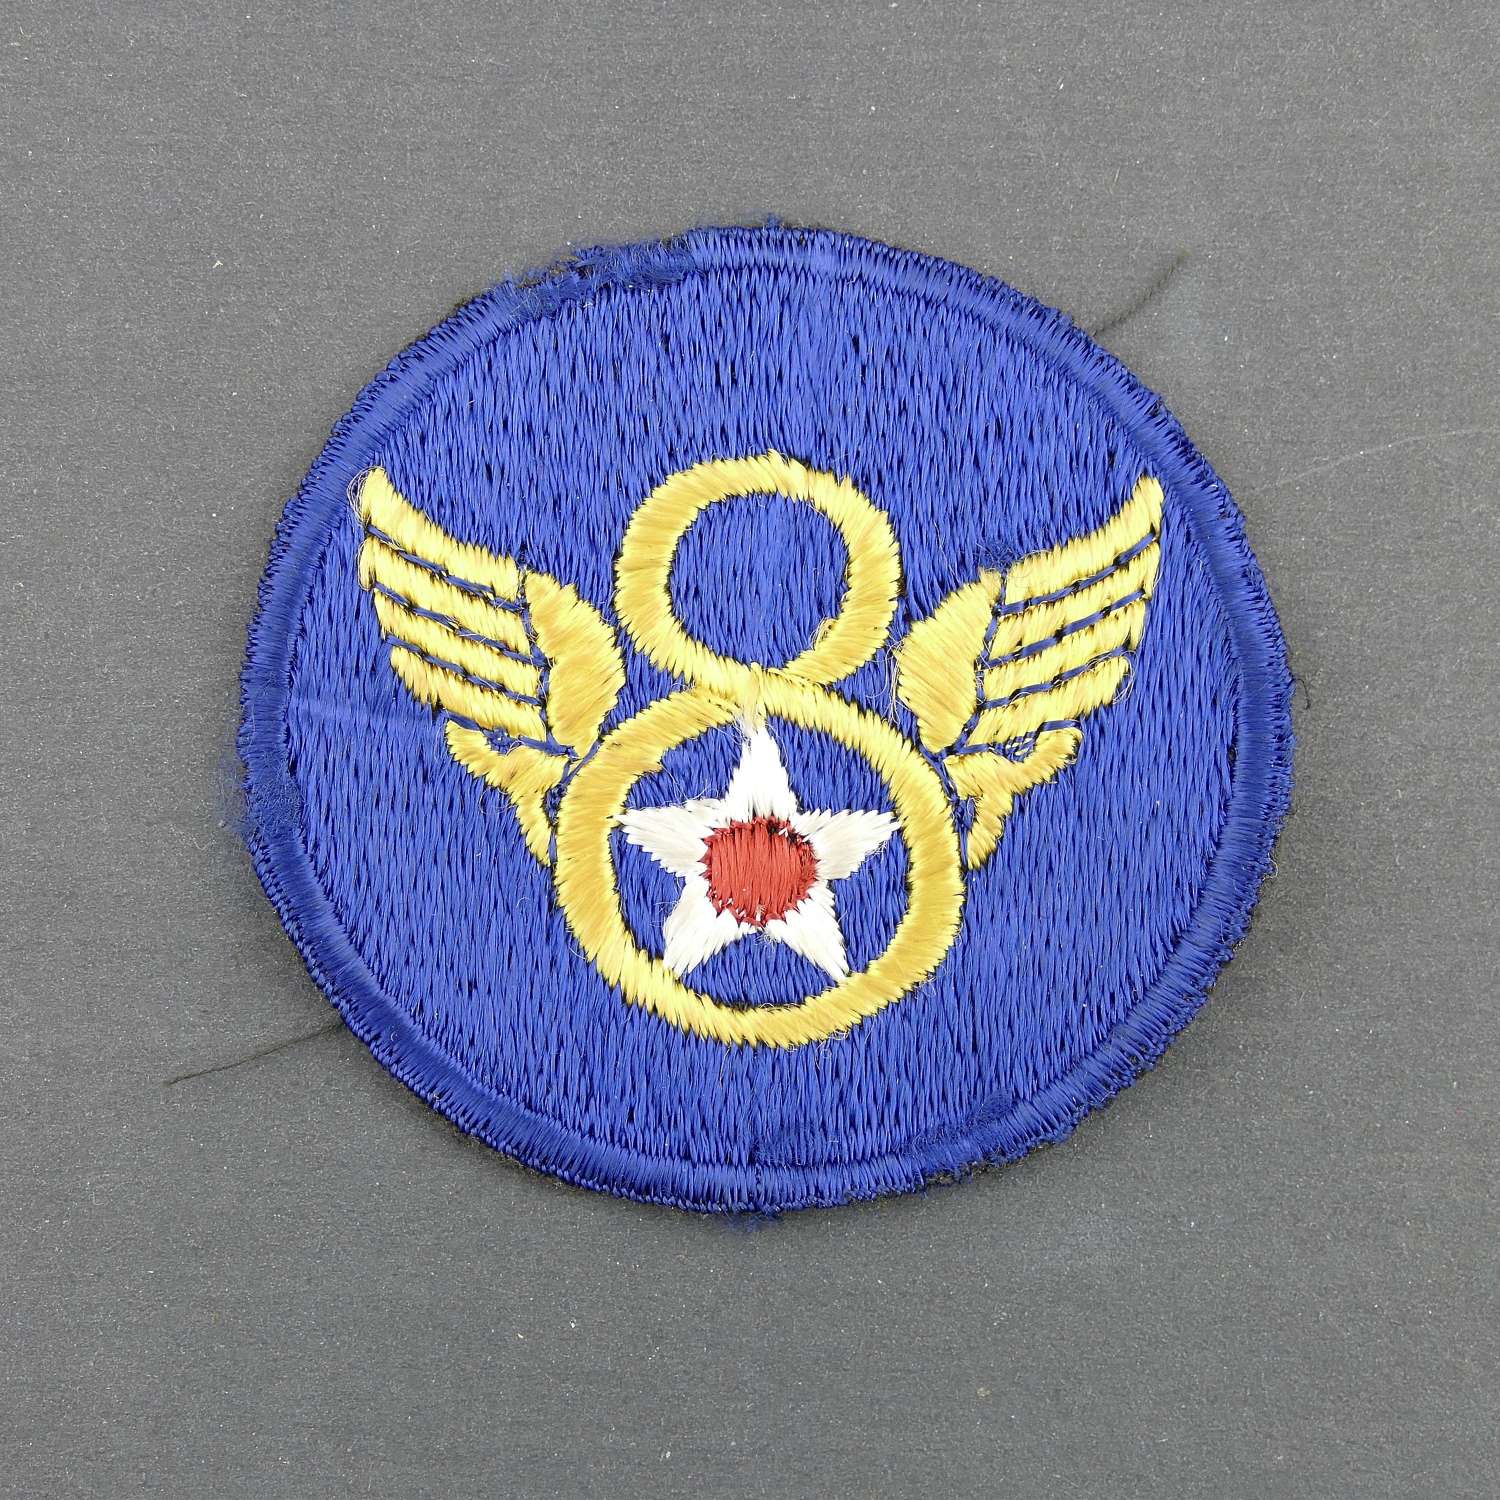 USAAF 8th AAF shoulder patch